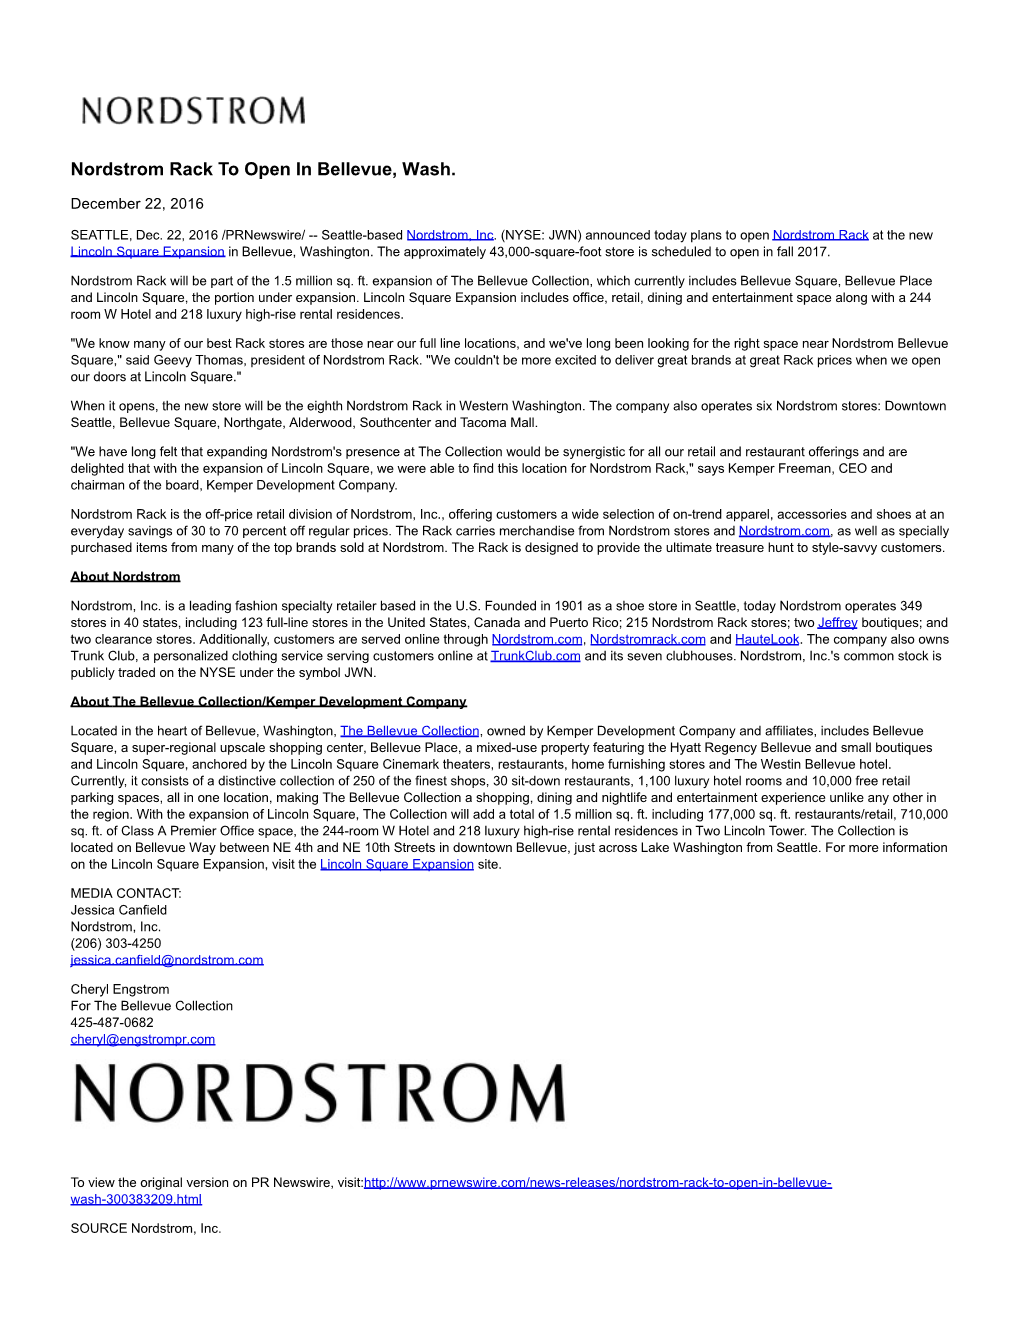 Nordstrom Rack to Open in Bellevue, Wash